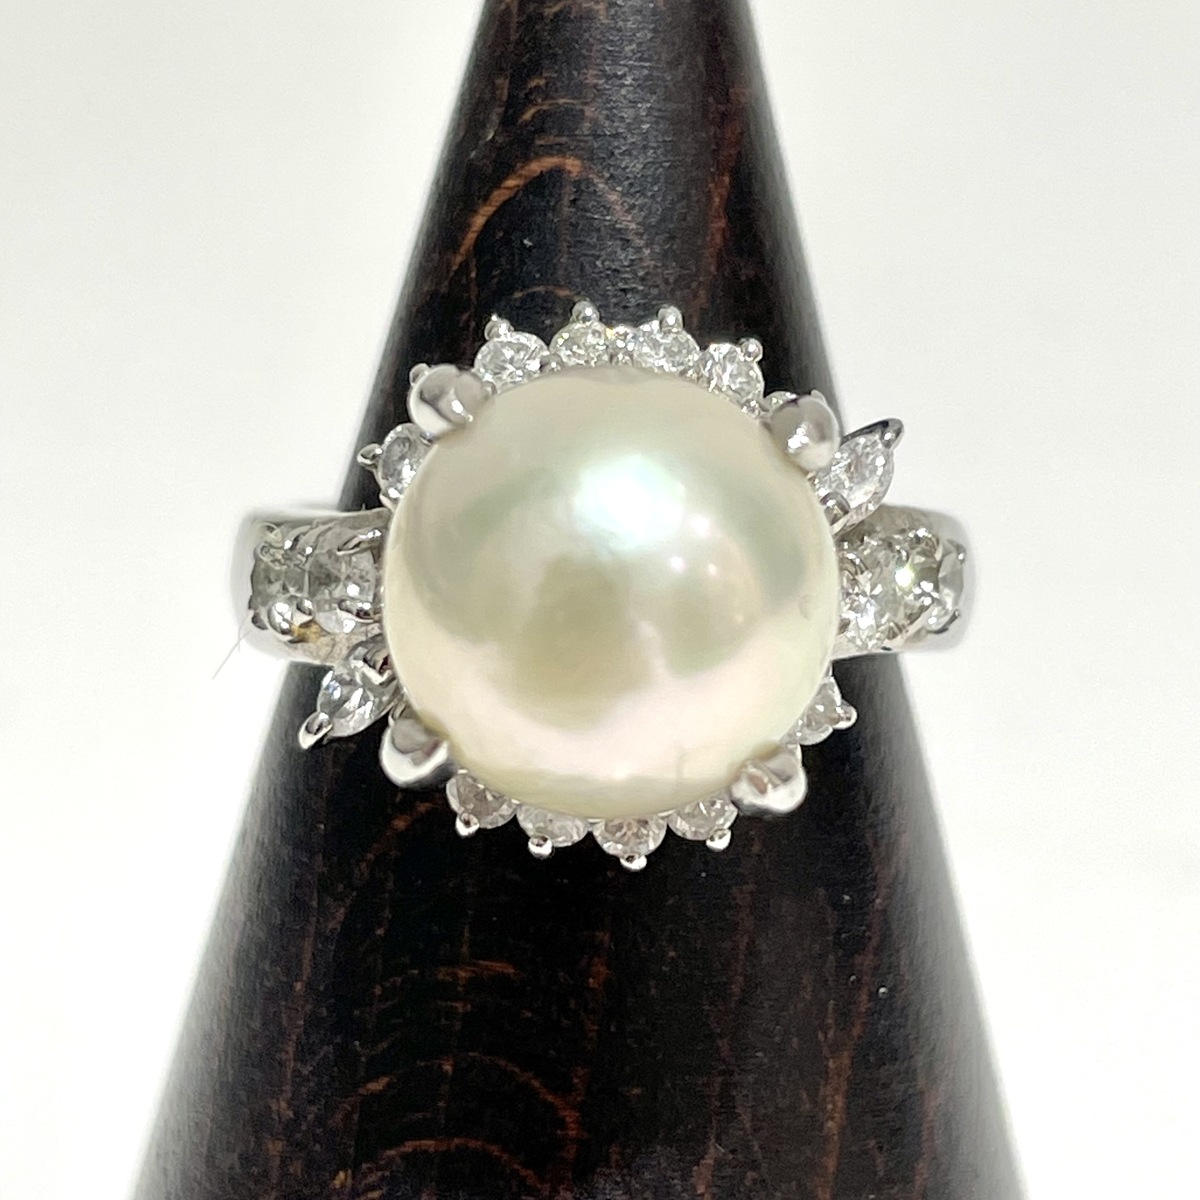 パール・真珠のPT900 アコヤ真珠(120mm) D0.52ct リングの買取実績です。